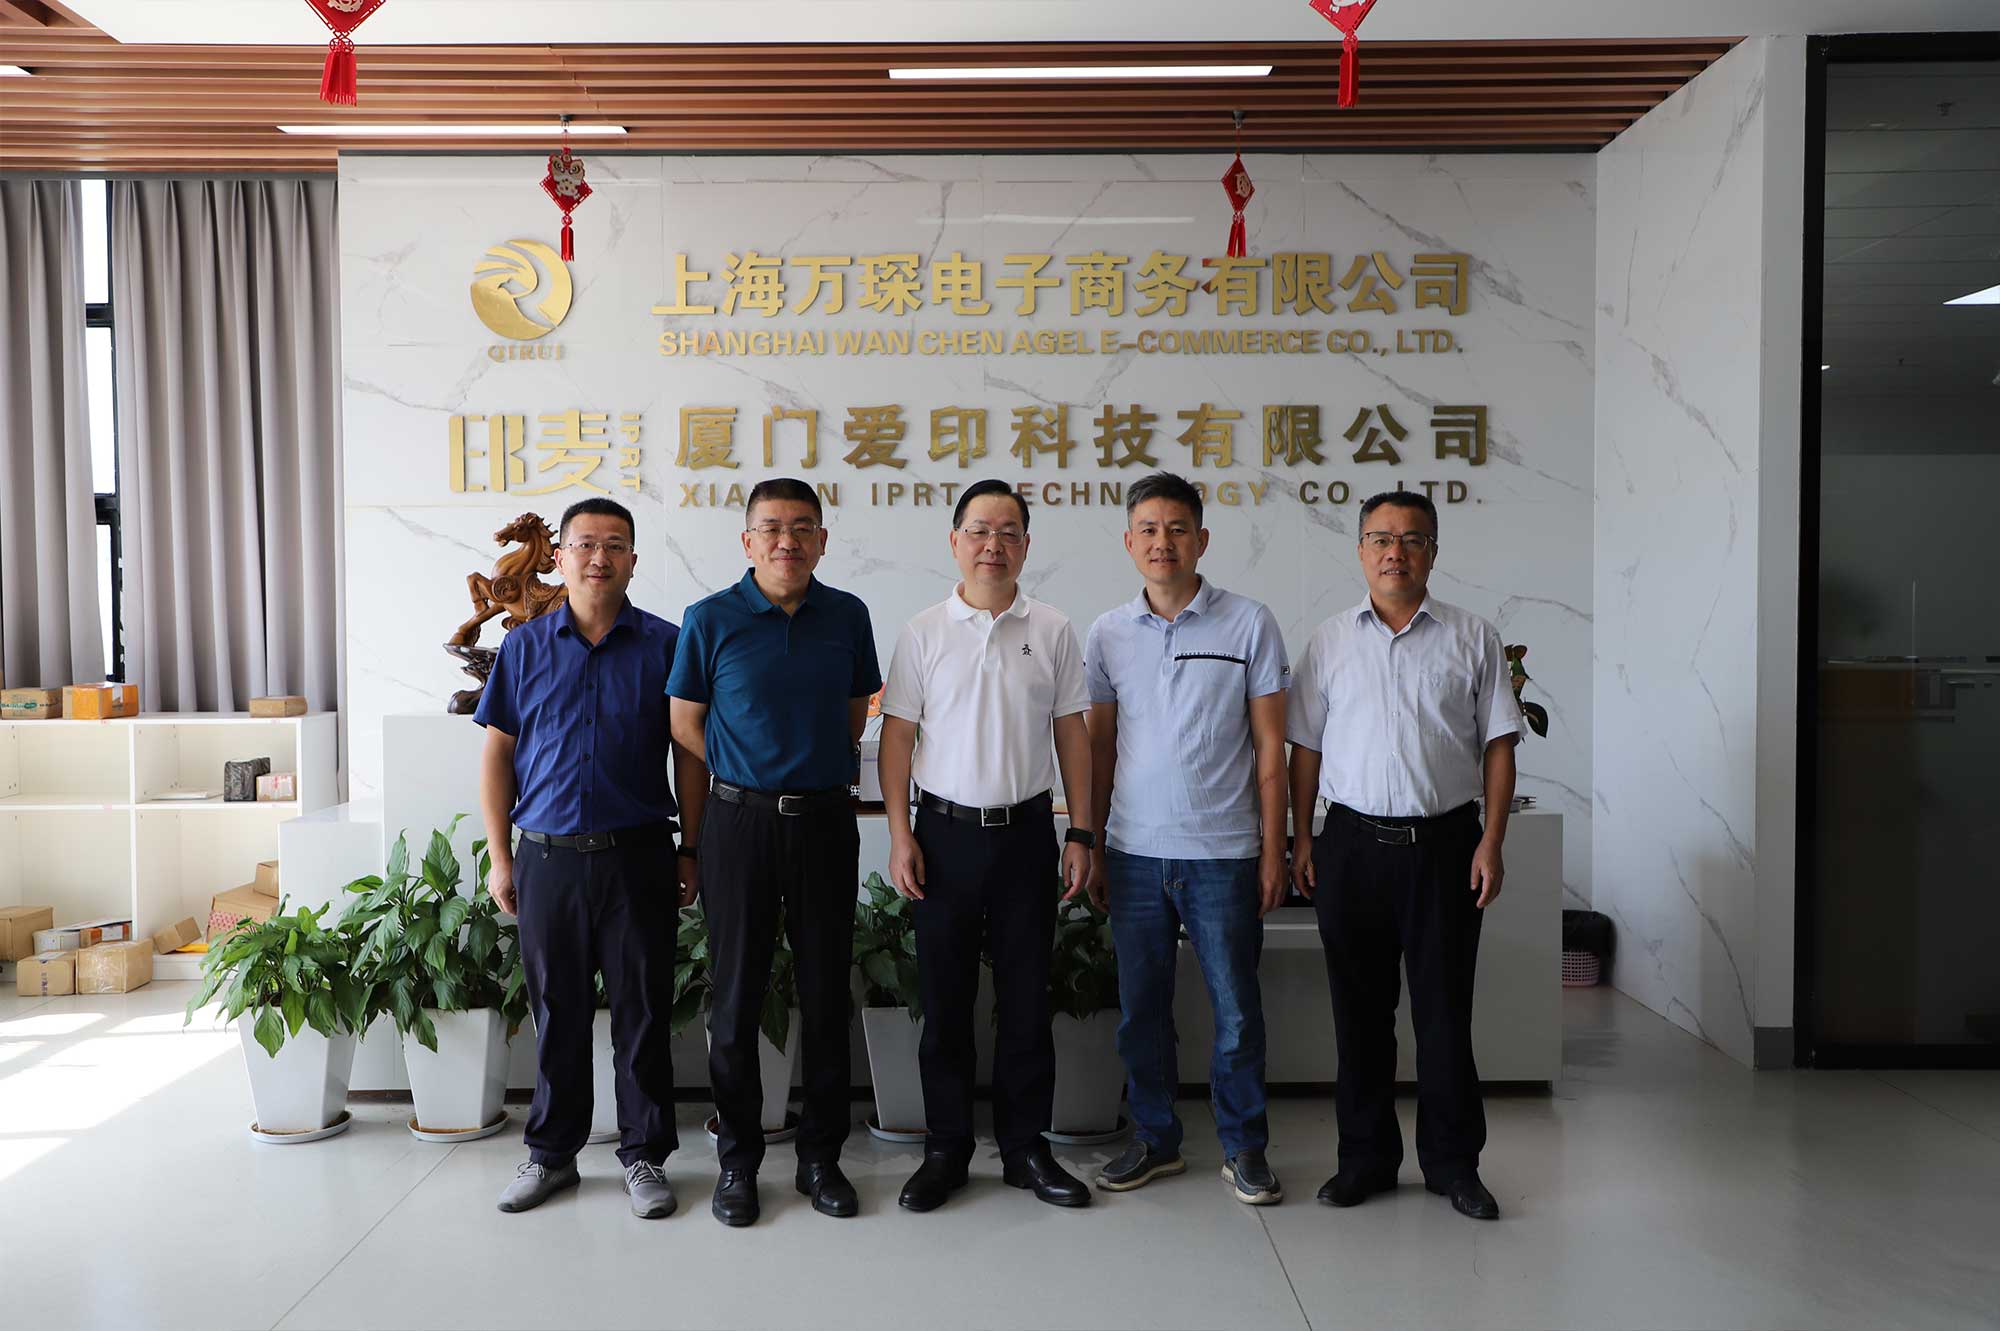 Вице-президент Xiamen CPPCC Ли Циньхуэй и другие посетили IPRT Technology для расследования и получения рекомендаций